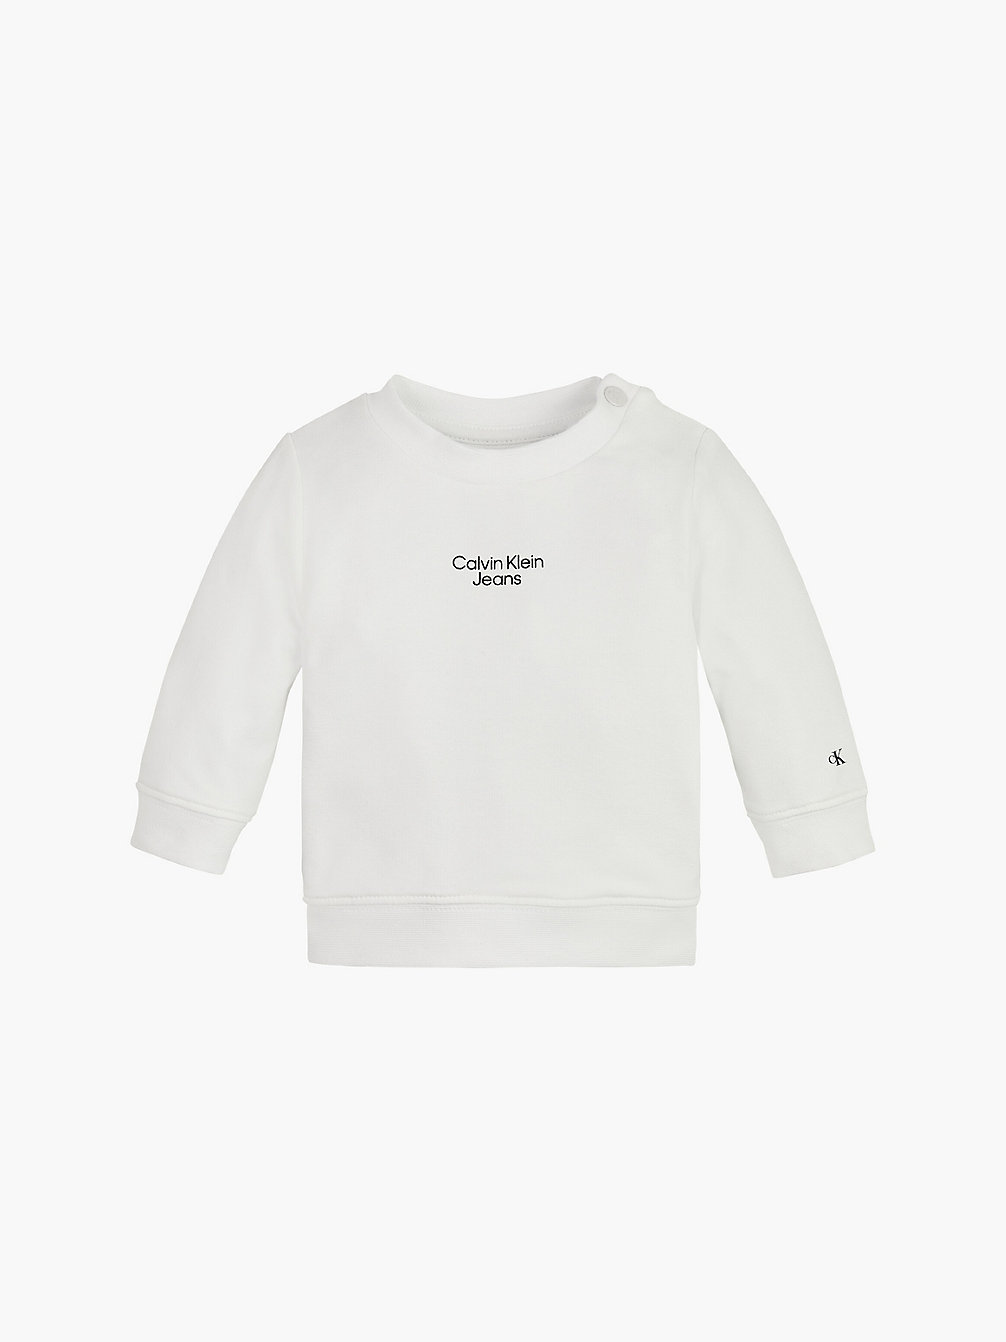 BRIGHT WHITE Baby-Sweatshirt Aus Bio-Baumwolle undefined newborn Calvin Klein